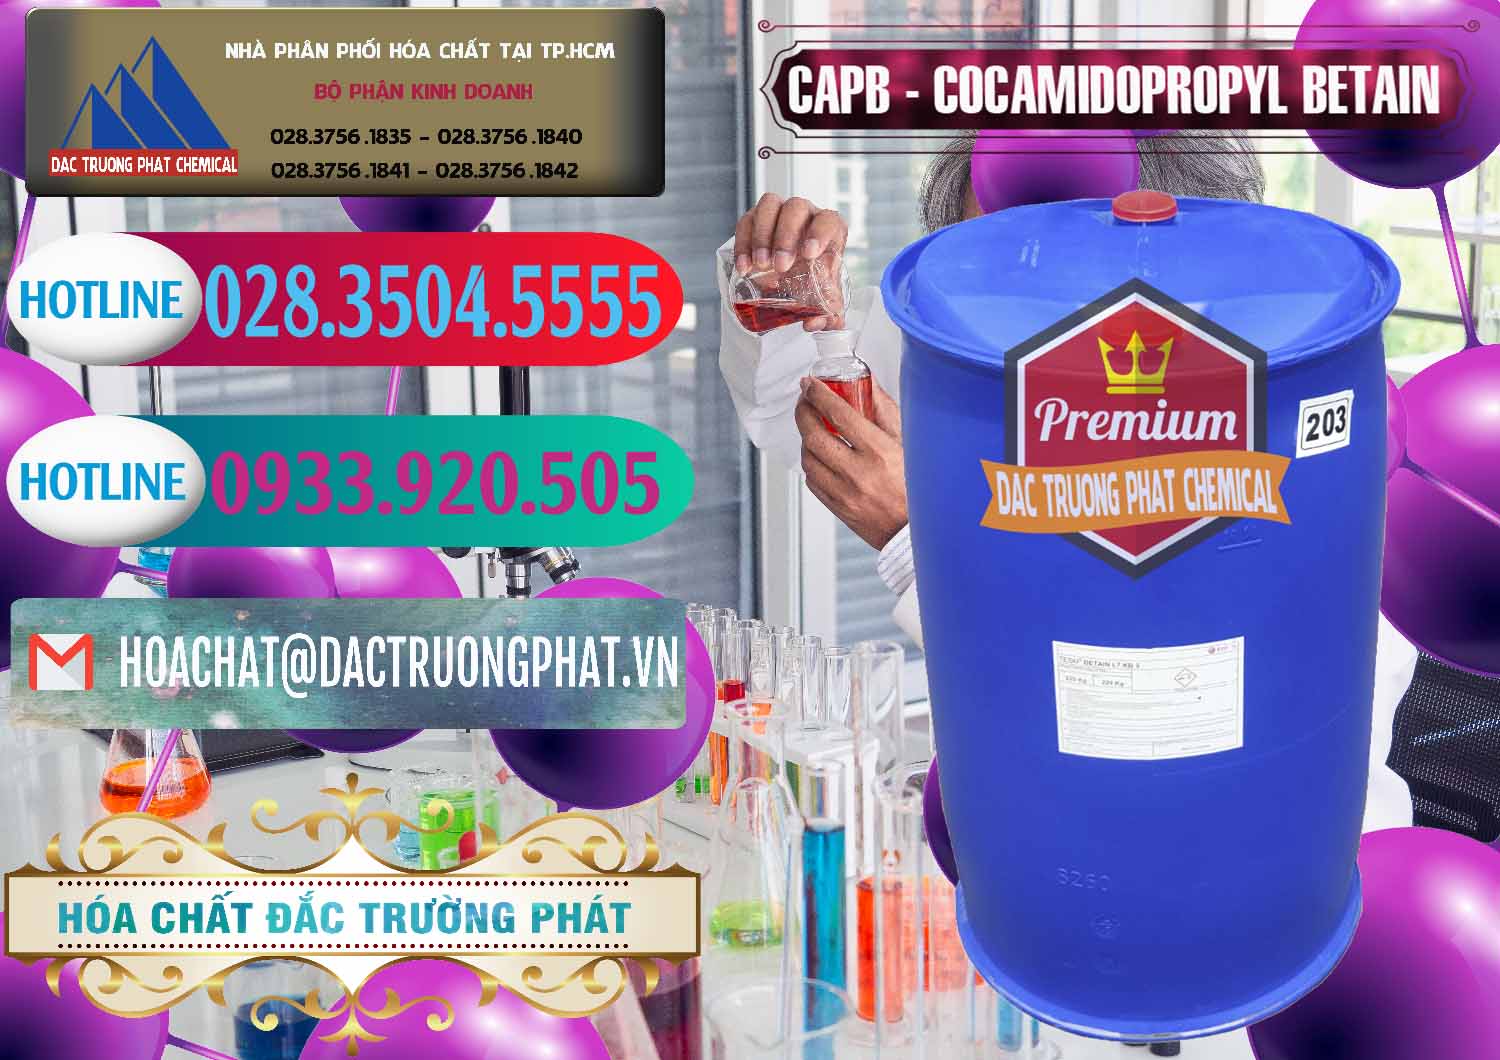 Đơn vị chuyên bán ( cung cấp ) Cocamidopropyl Betaine - CAPB Tego Indonesia - 0327 - Chuyên phân phối & kinh doanh hóa chất tại TP.HCM - truongphat.vn